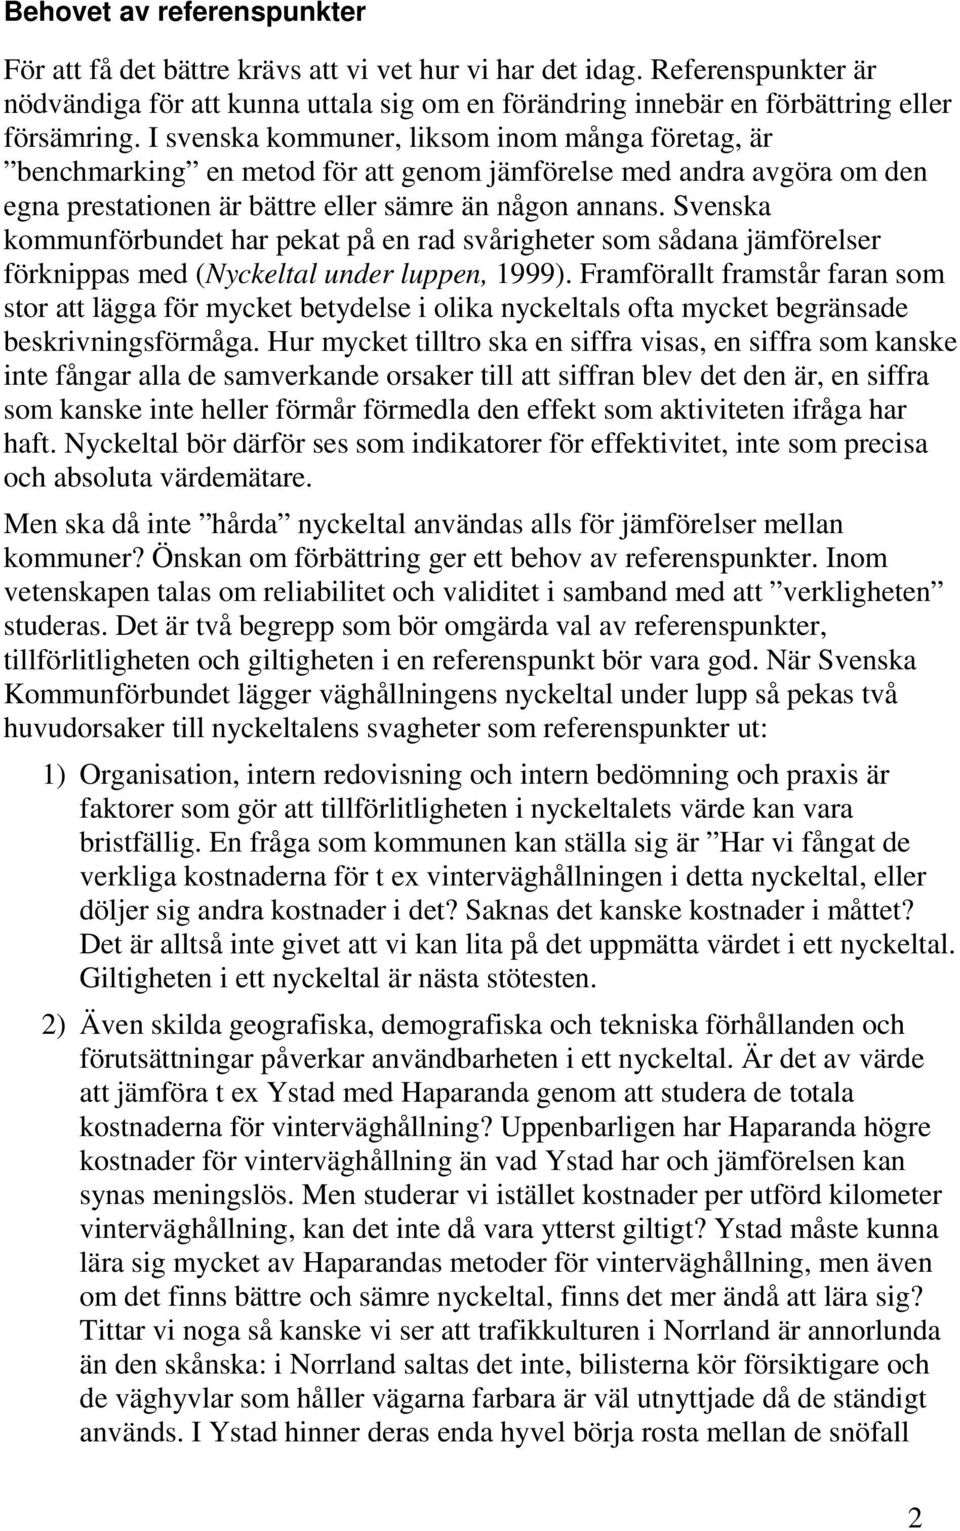 Svenska kommunförbundet har pekat på en rad svårigheter som sådana jämförelser förknippas med (Nyckeltal under luppen, 1999).